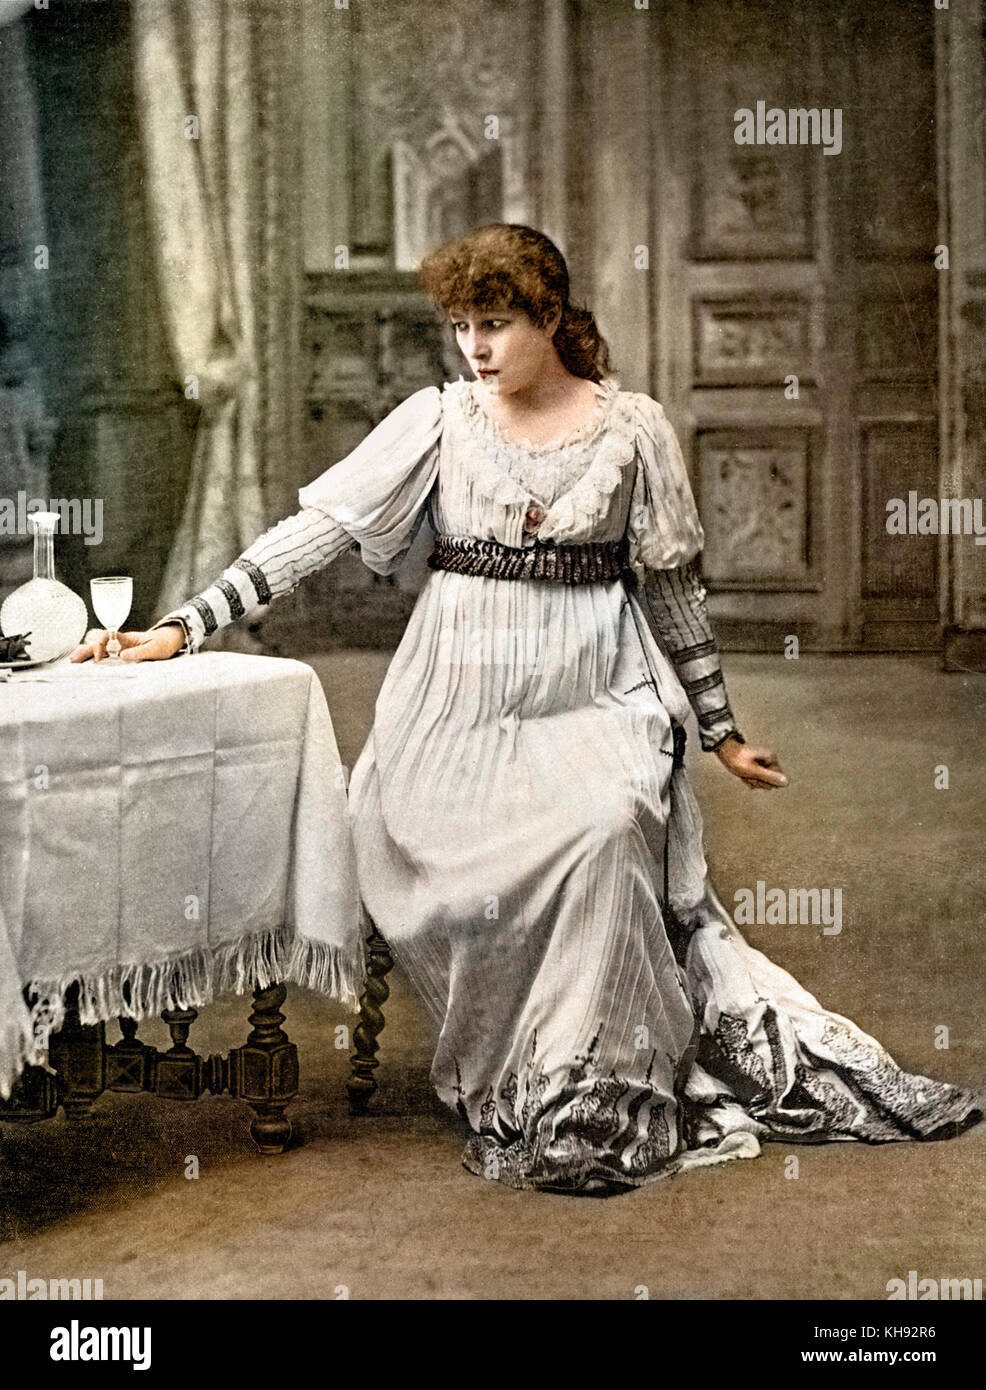 Sarah-Bernhardt nel ruolo di Tosca in gioco da Victorien Sardou, nel 1899, che ha ispirato la creazione della sua opera Puccini, 'Tosca'. Foto Stock